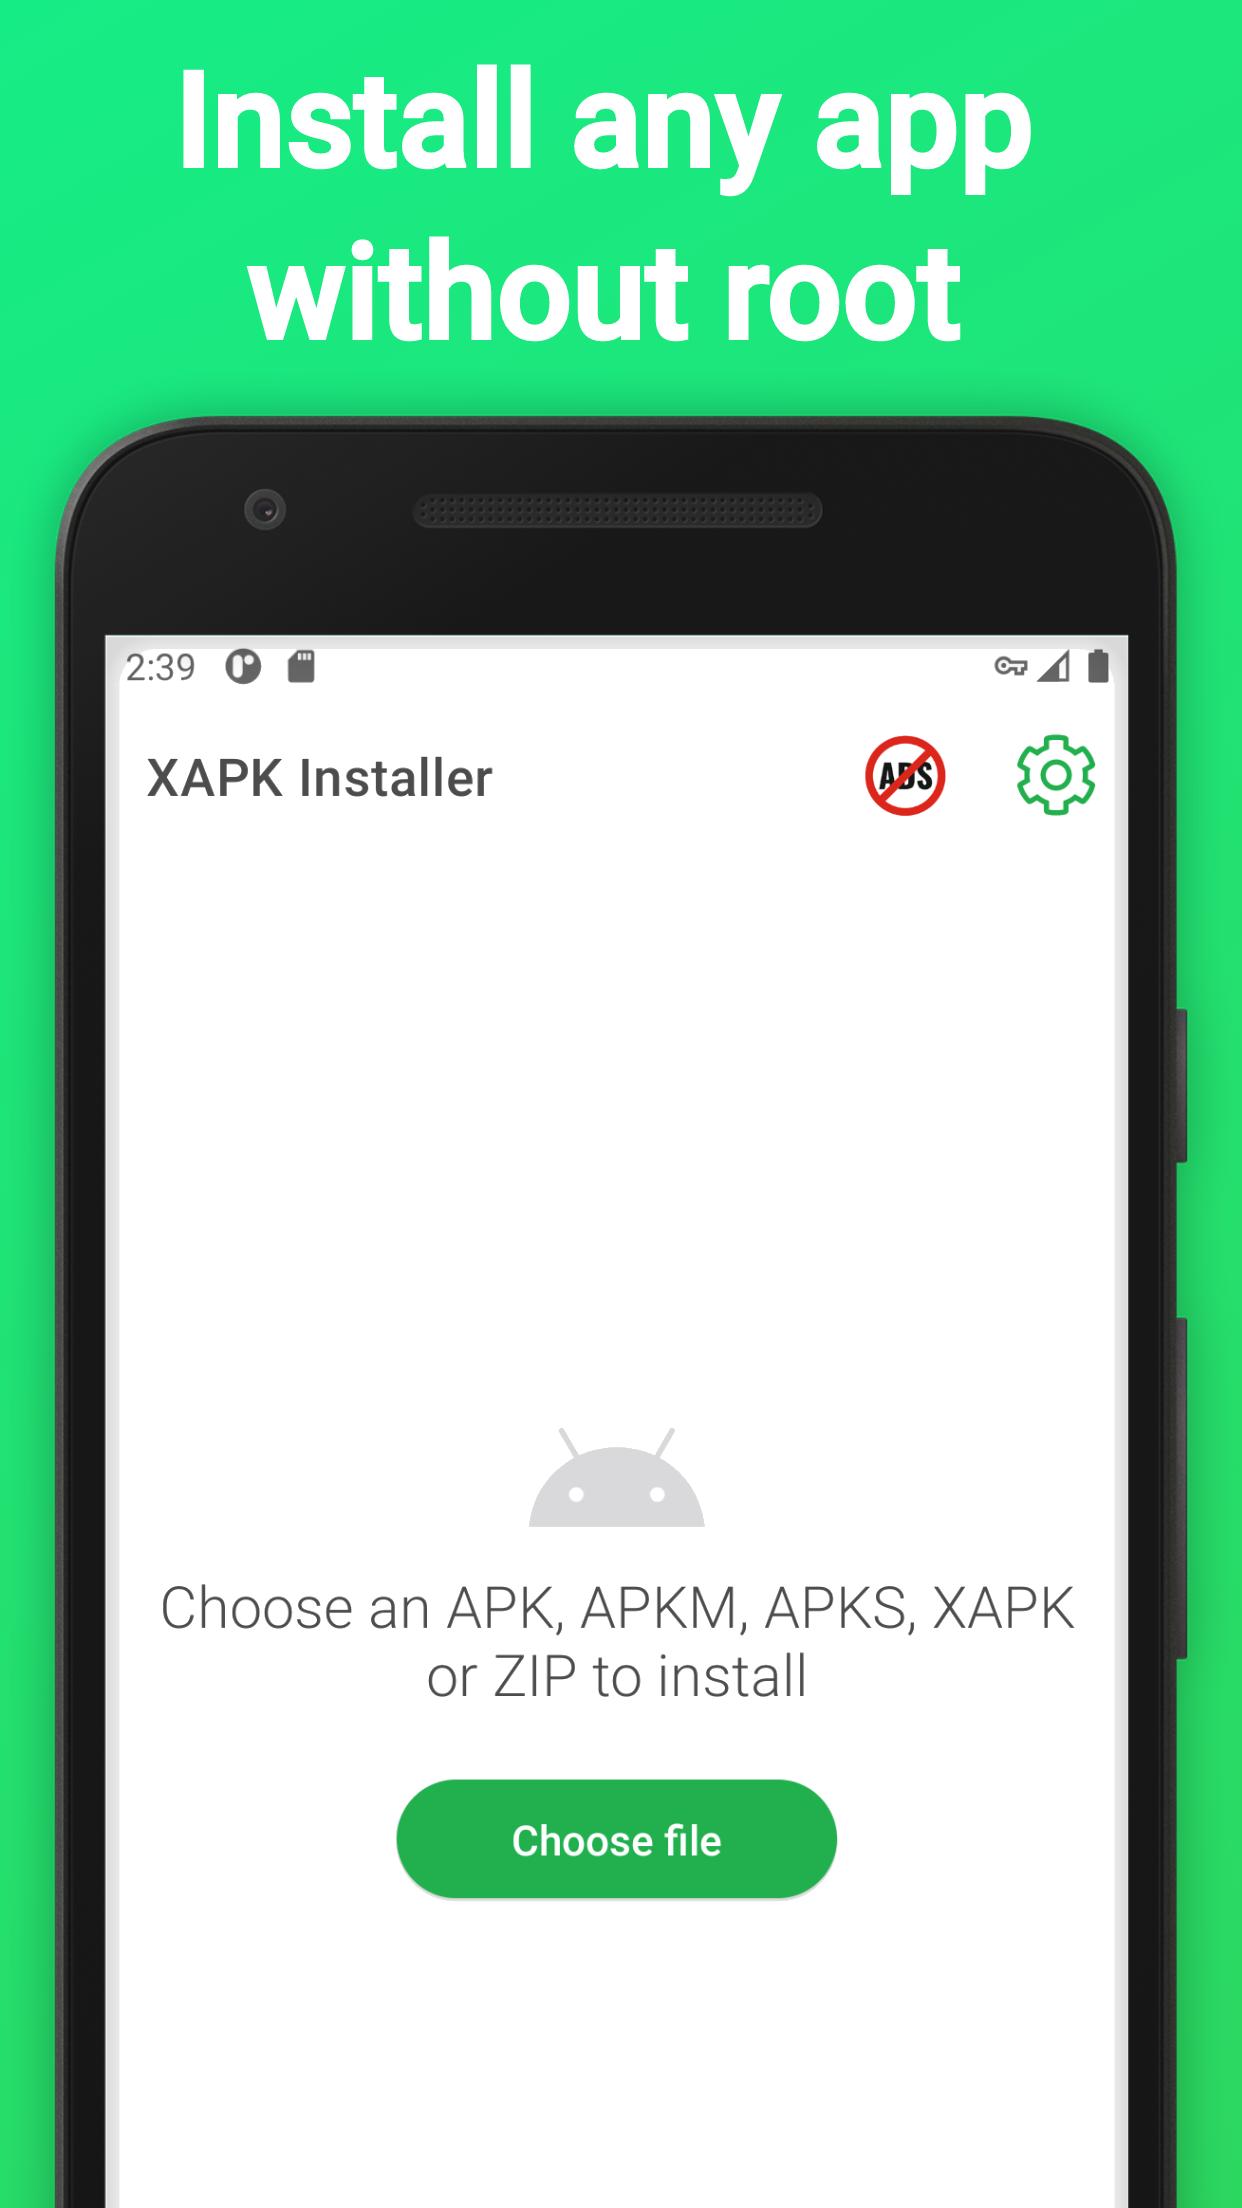 Xapk в apk. Установщик APK. Харк installer. Приложения для открытия XAPK. APK file installer.